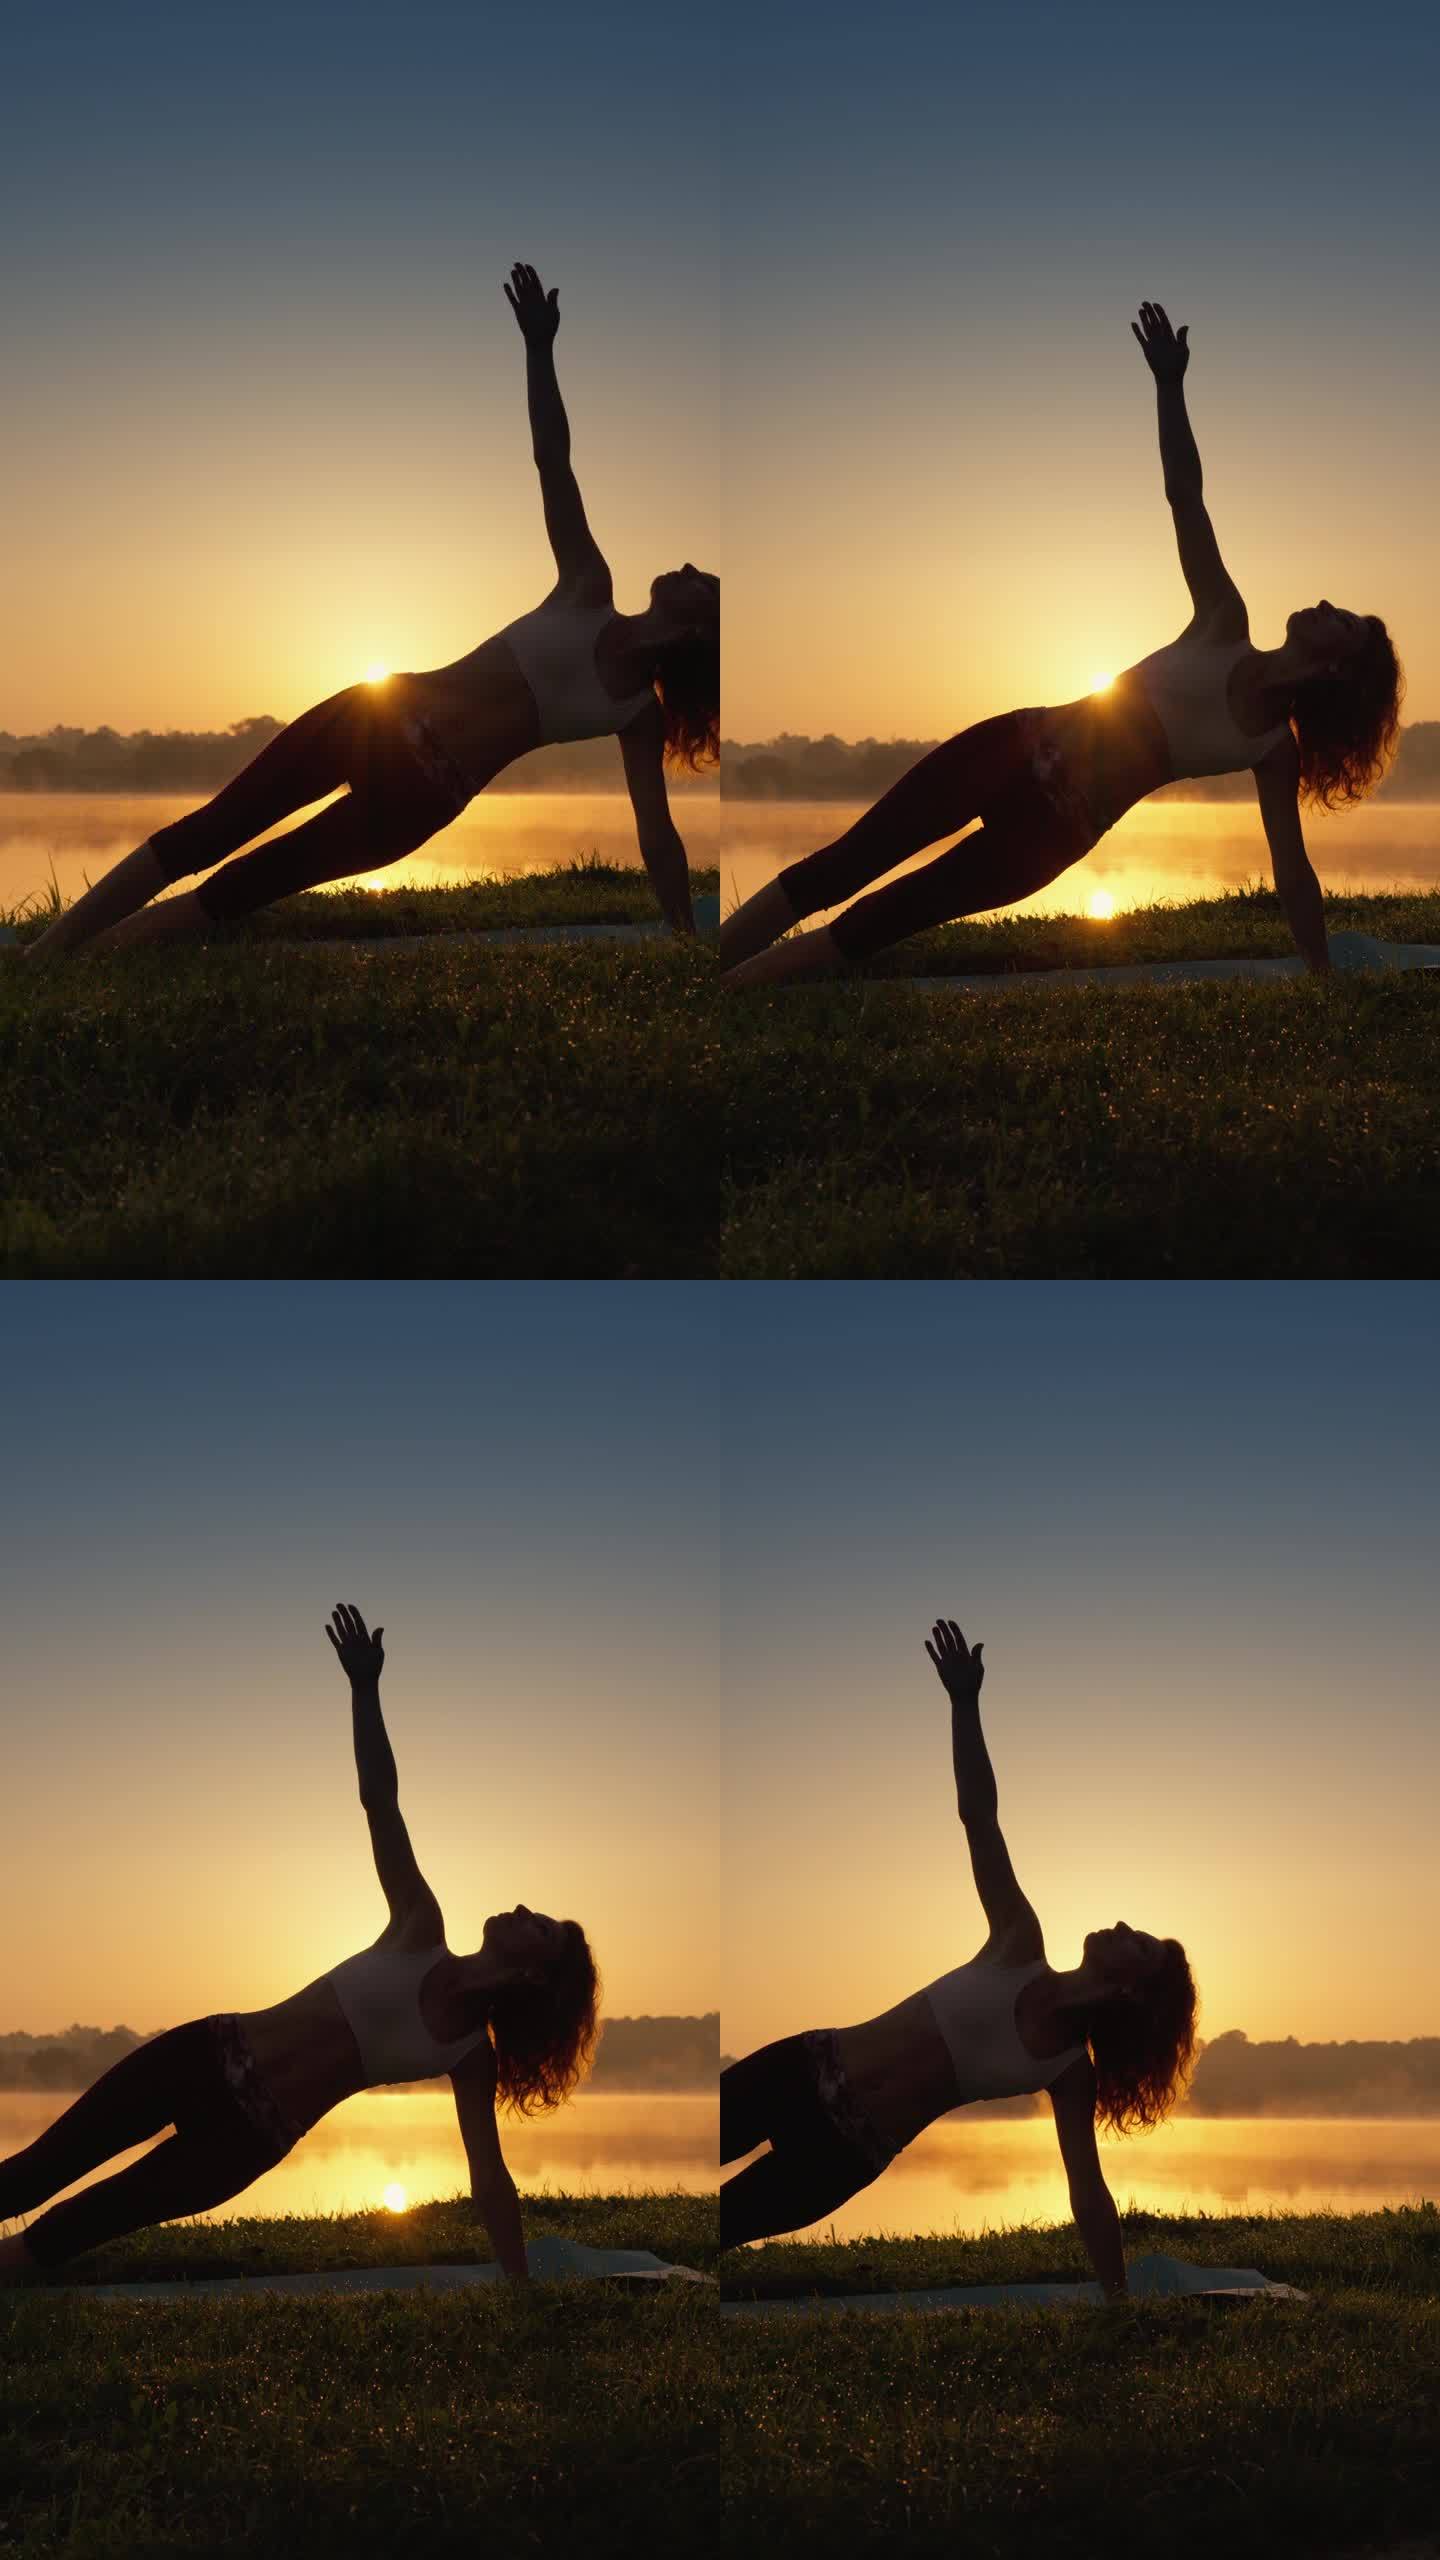 与自然和谐的瑜伽:健康生活方式的秘密。一名妇女在自然环境中将冥想融入瑜伽练习中。剪影男子在日出，锻炼